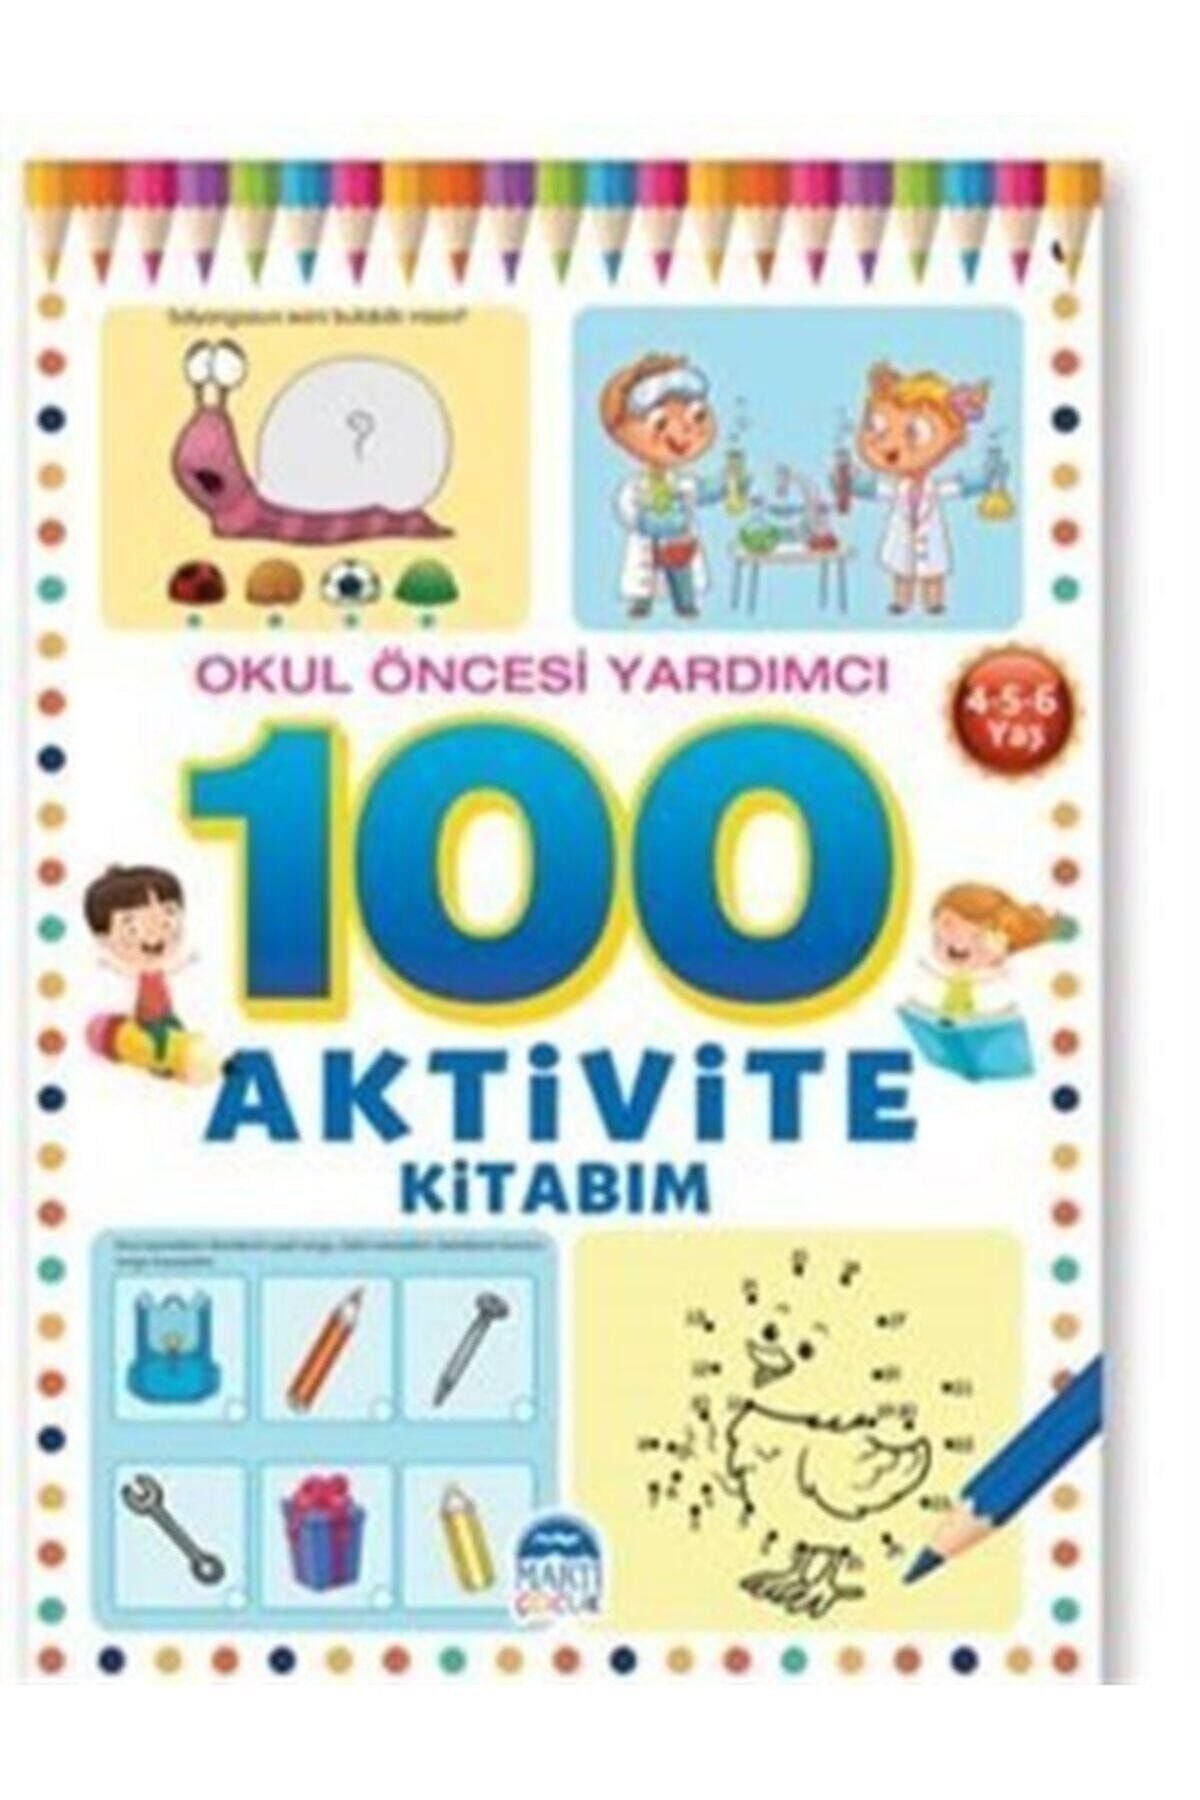 Arti Yayınları 100 Aktivite Kitabim / Okul Öncesi Yardımcı 4-5-6 Yaş